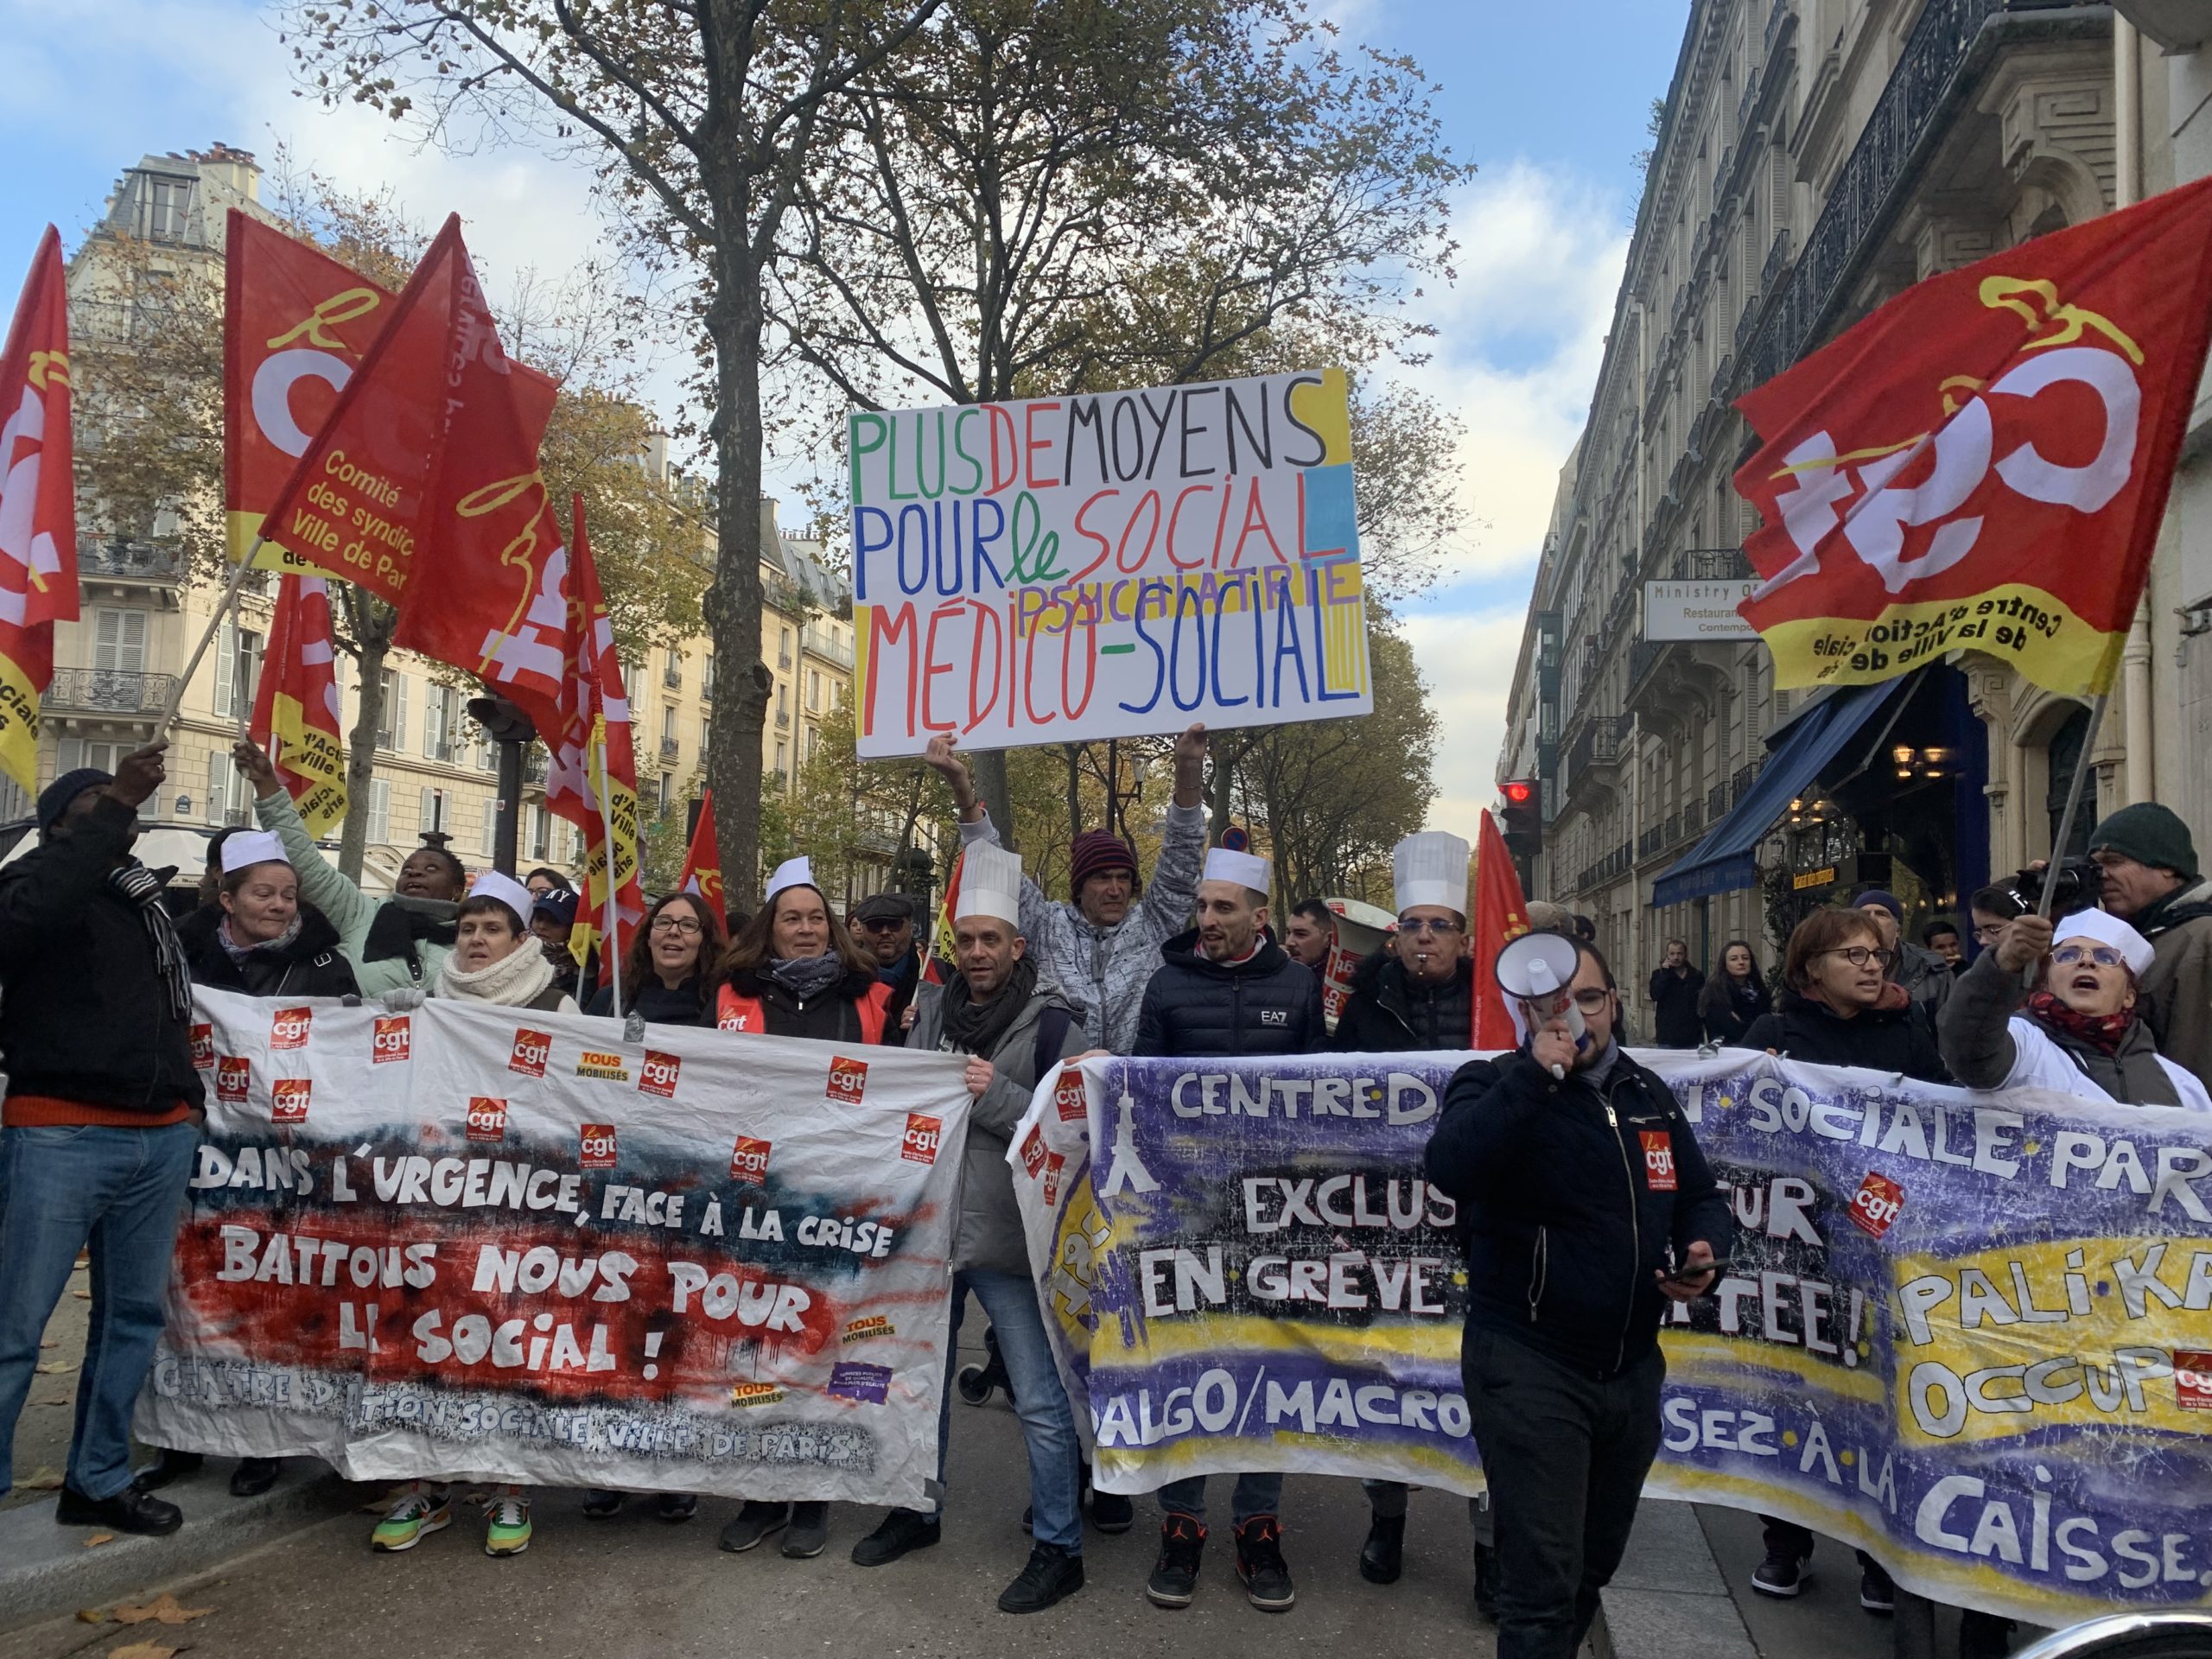 Médico-social : une grève nationale et des mobilisations partout en France